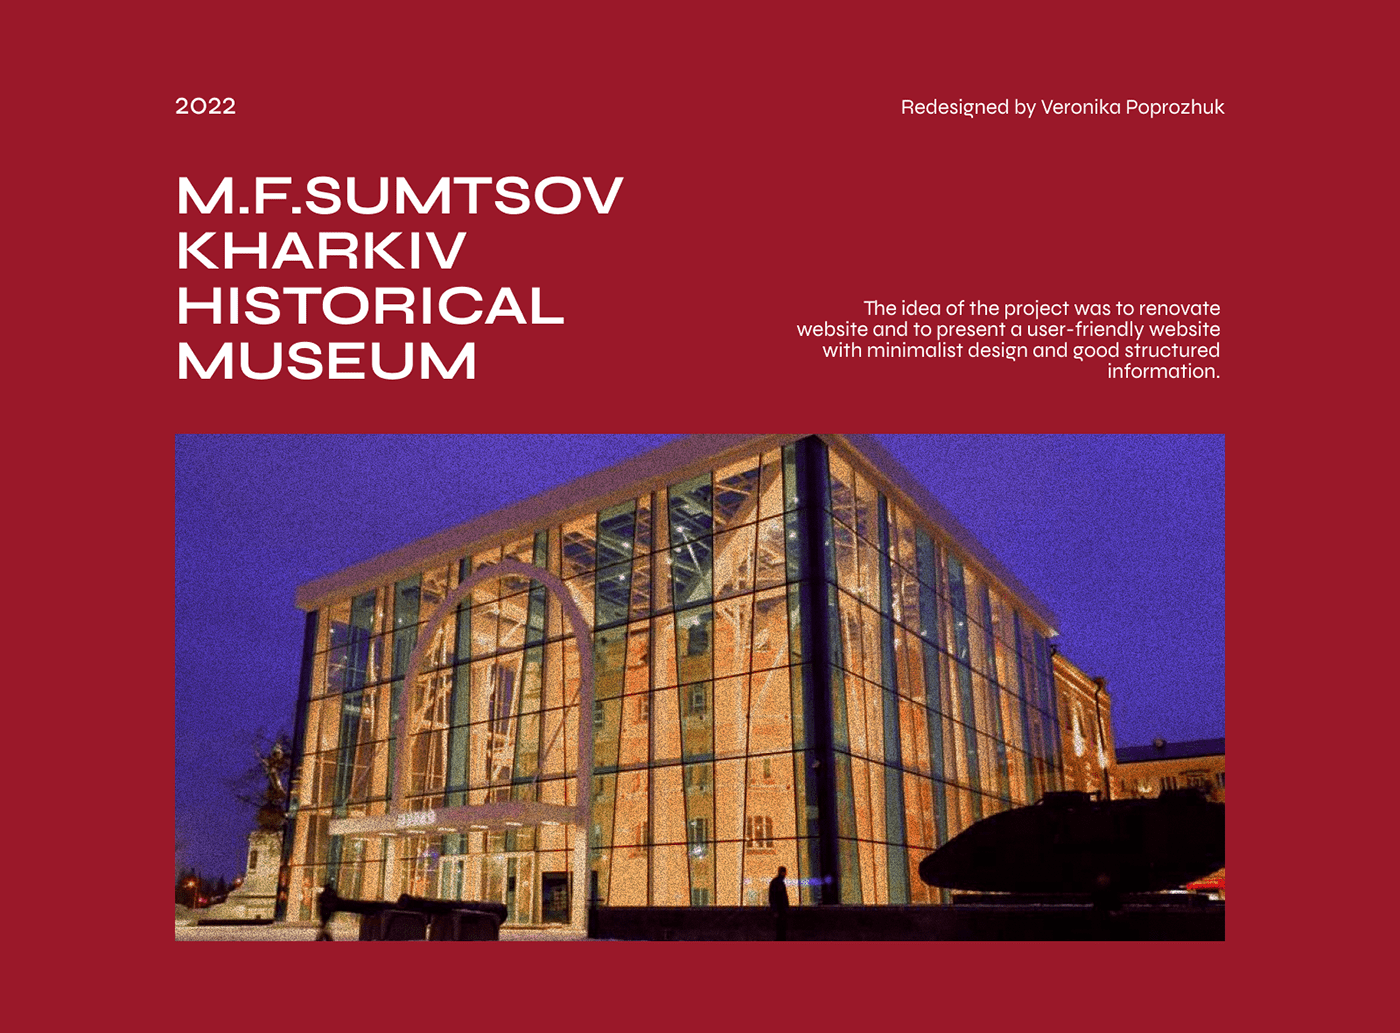 historical museum museum website redesign ui design